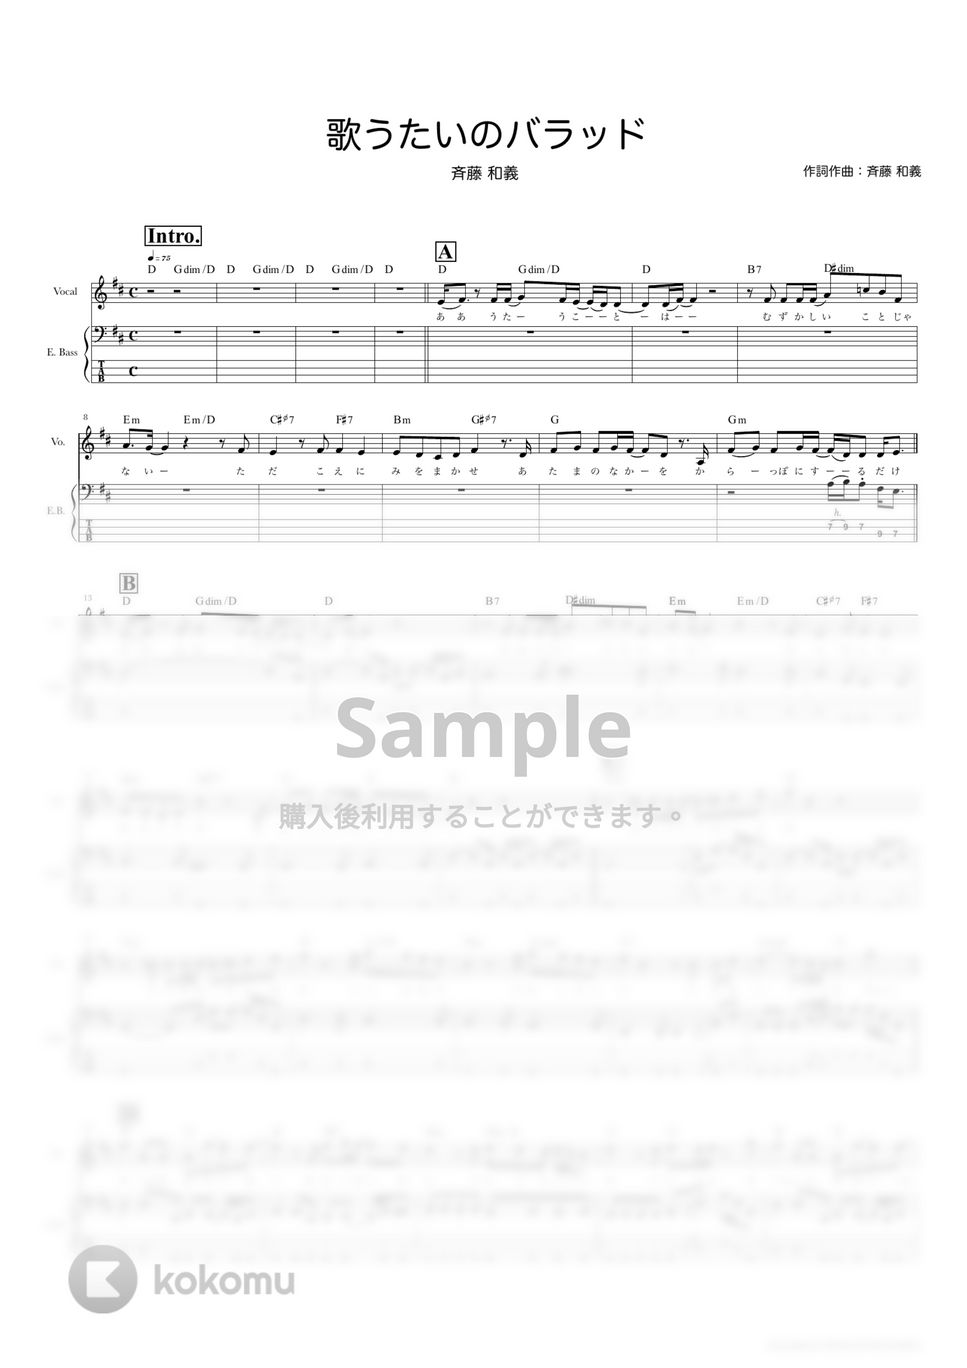 斉藤　和義 - 歌うたいのバラッド (ベーススコア・歌詞・コード付き) by TRIAD GUITAR SCHOOL